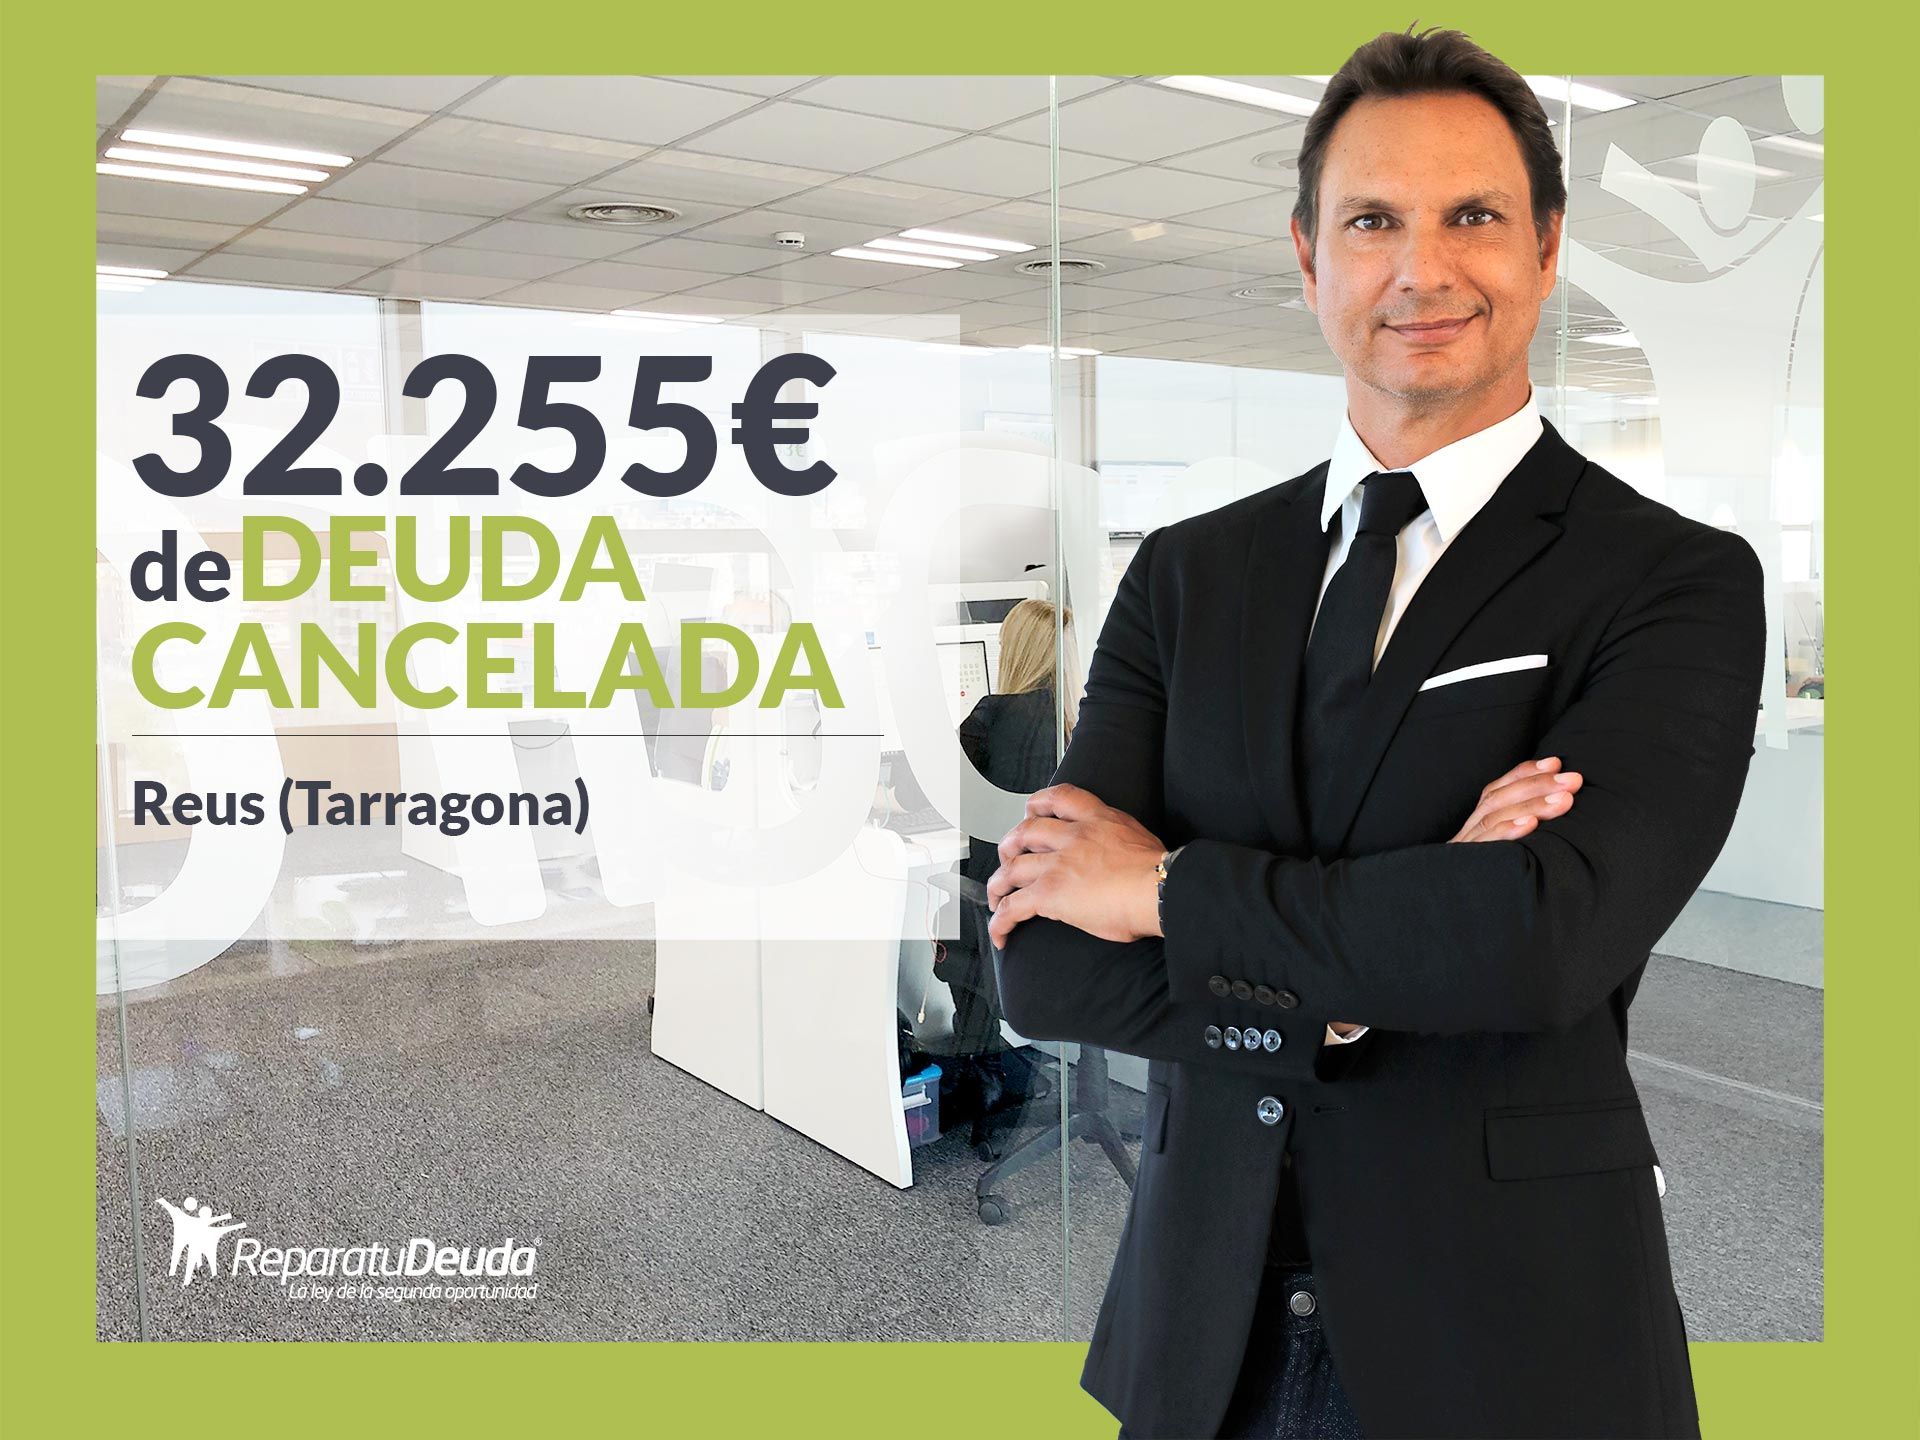 Repara tu Deuda Abogados cancela 32.255? en Reus (Tarragona) con la Ley de la Segunda Oportunidad